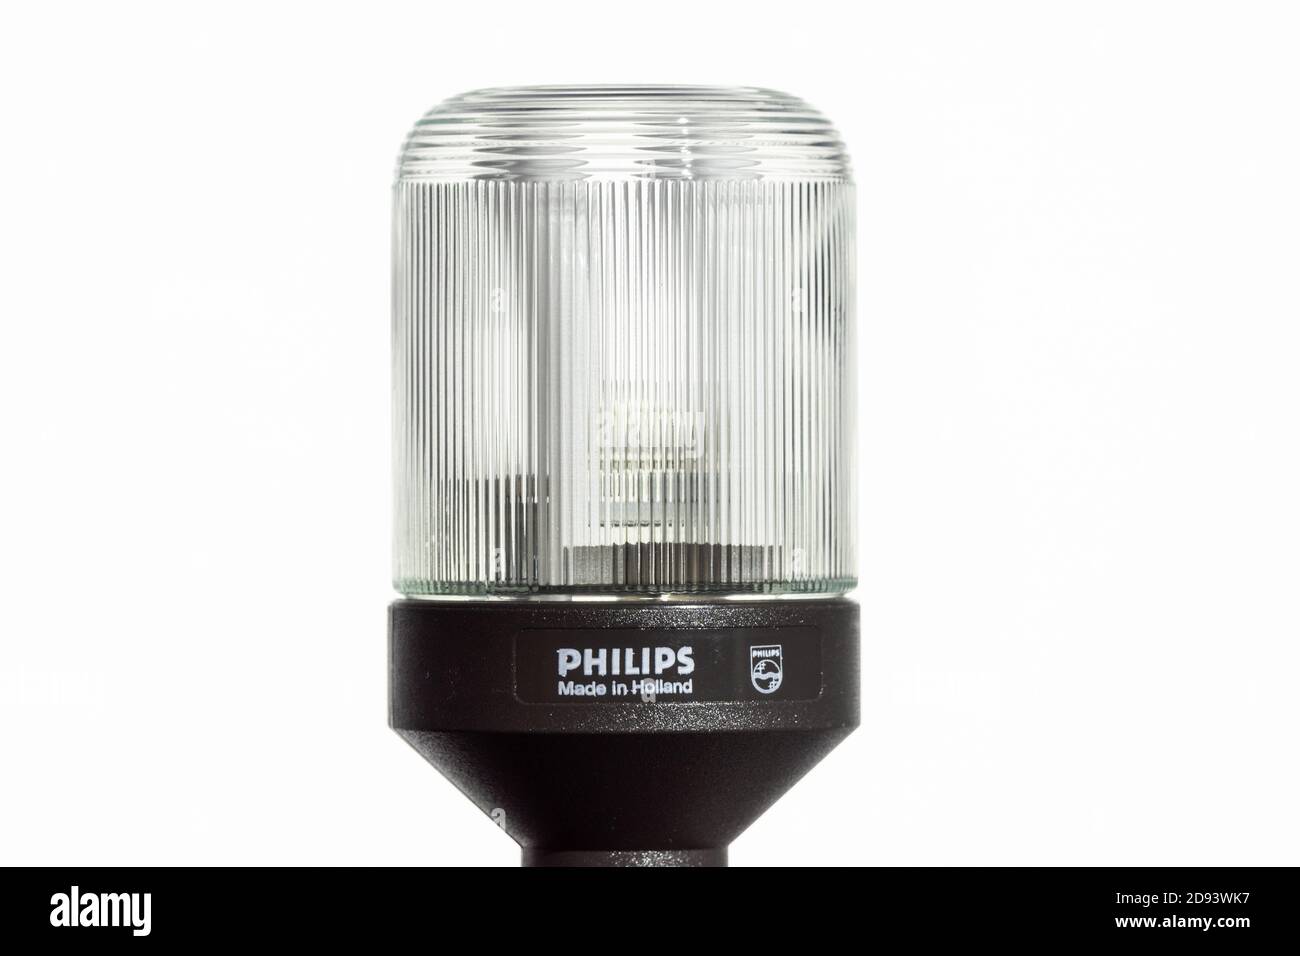 Philips SL*9 CFL con base nera, primo raro esempio di CFL originale o design a risparmio energetico risalente agli inizi degli anni '80, le lampade più recenti avevano una base bianca Foto Stock